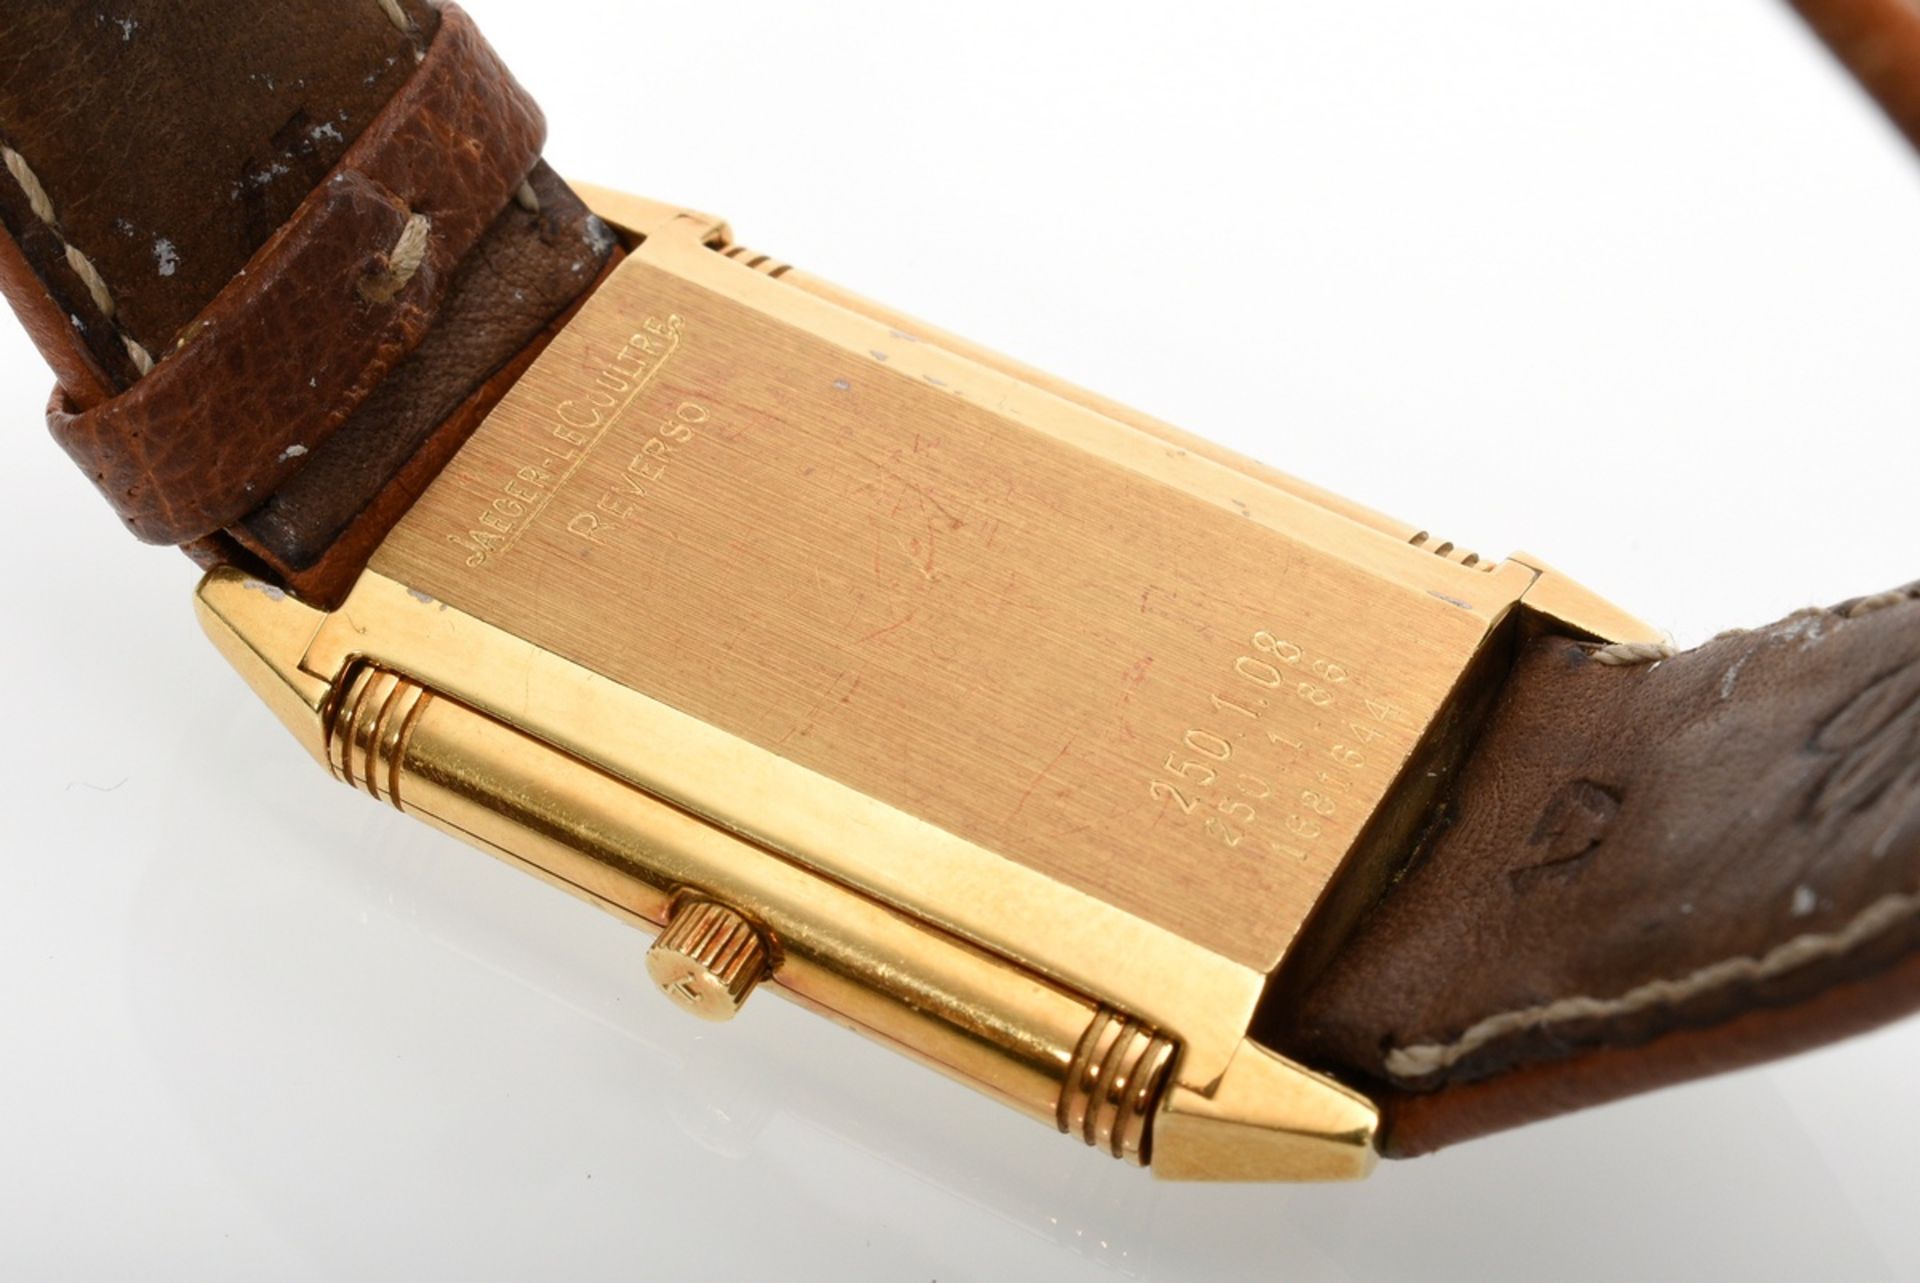 Jaeger LeCoultre Reverso Classique Gelbgold 750 Armbanduhr, Quarzwerk, Wendegehäuse mit verso gravi - Bild 3 aus 5